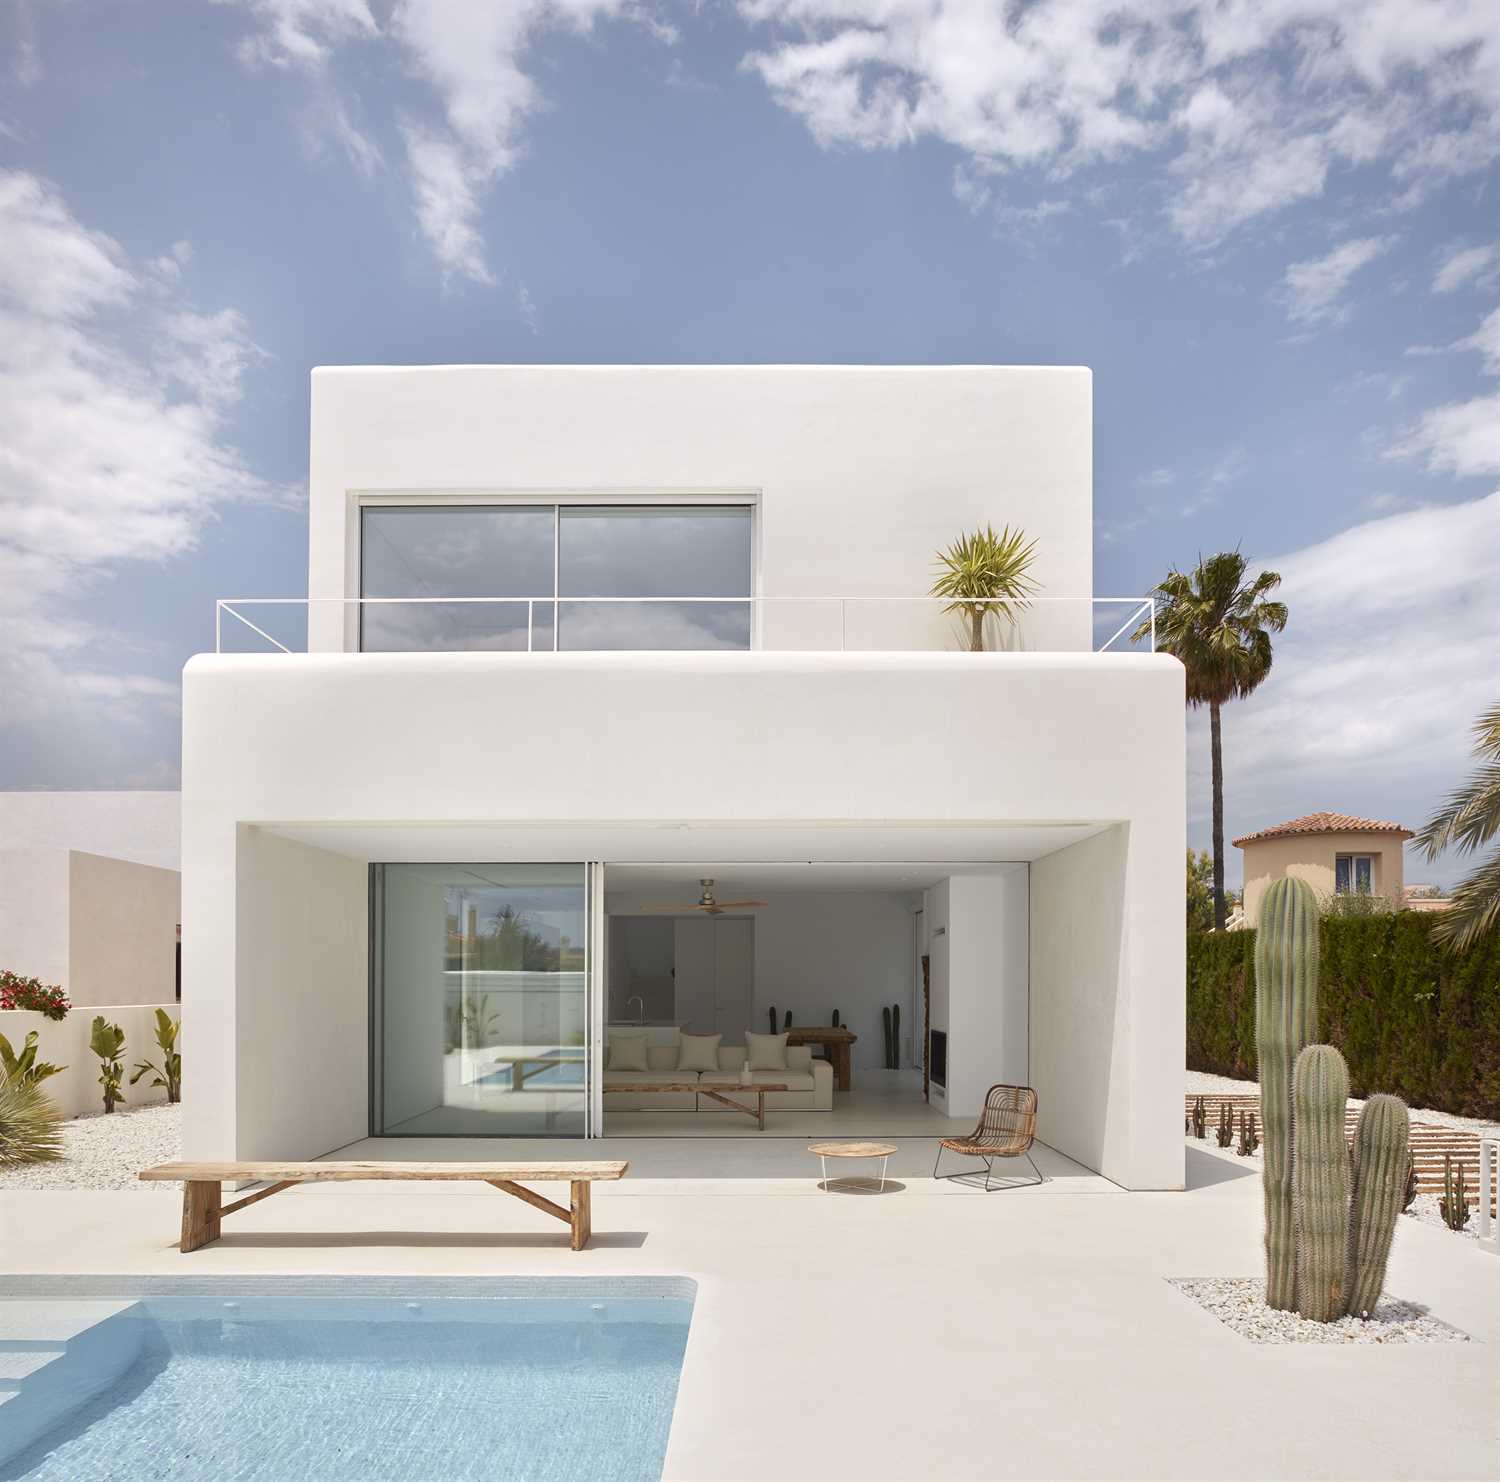 Casa ristrutturata con microcemento di colore bianco.